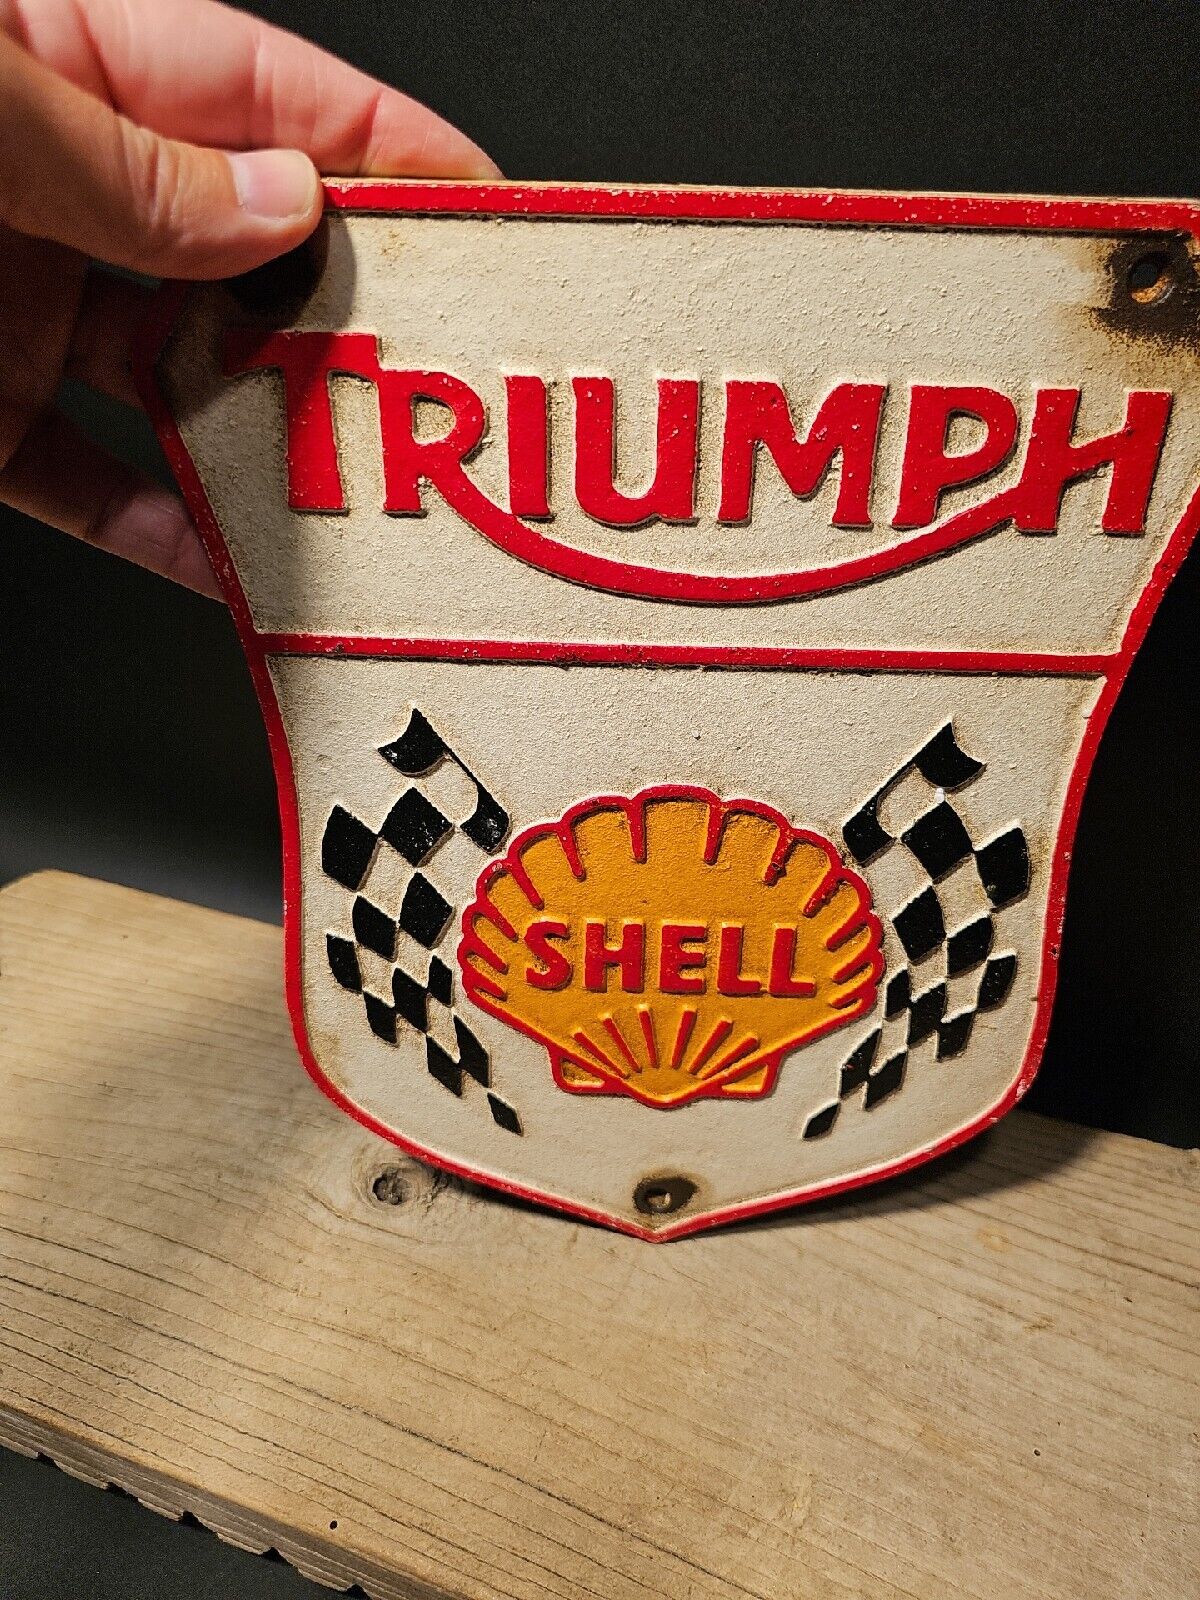 Antique Vintage Style Cast Iron Triumph Shell Gas Oil Sign Plaque